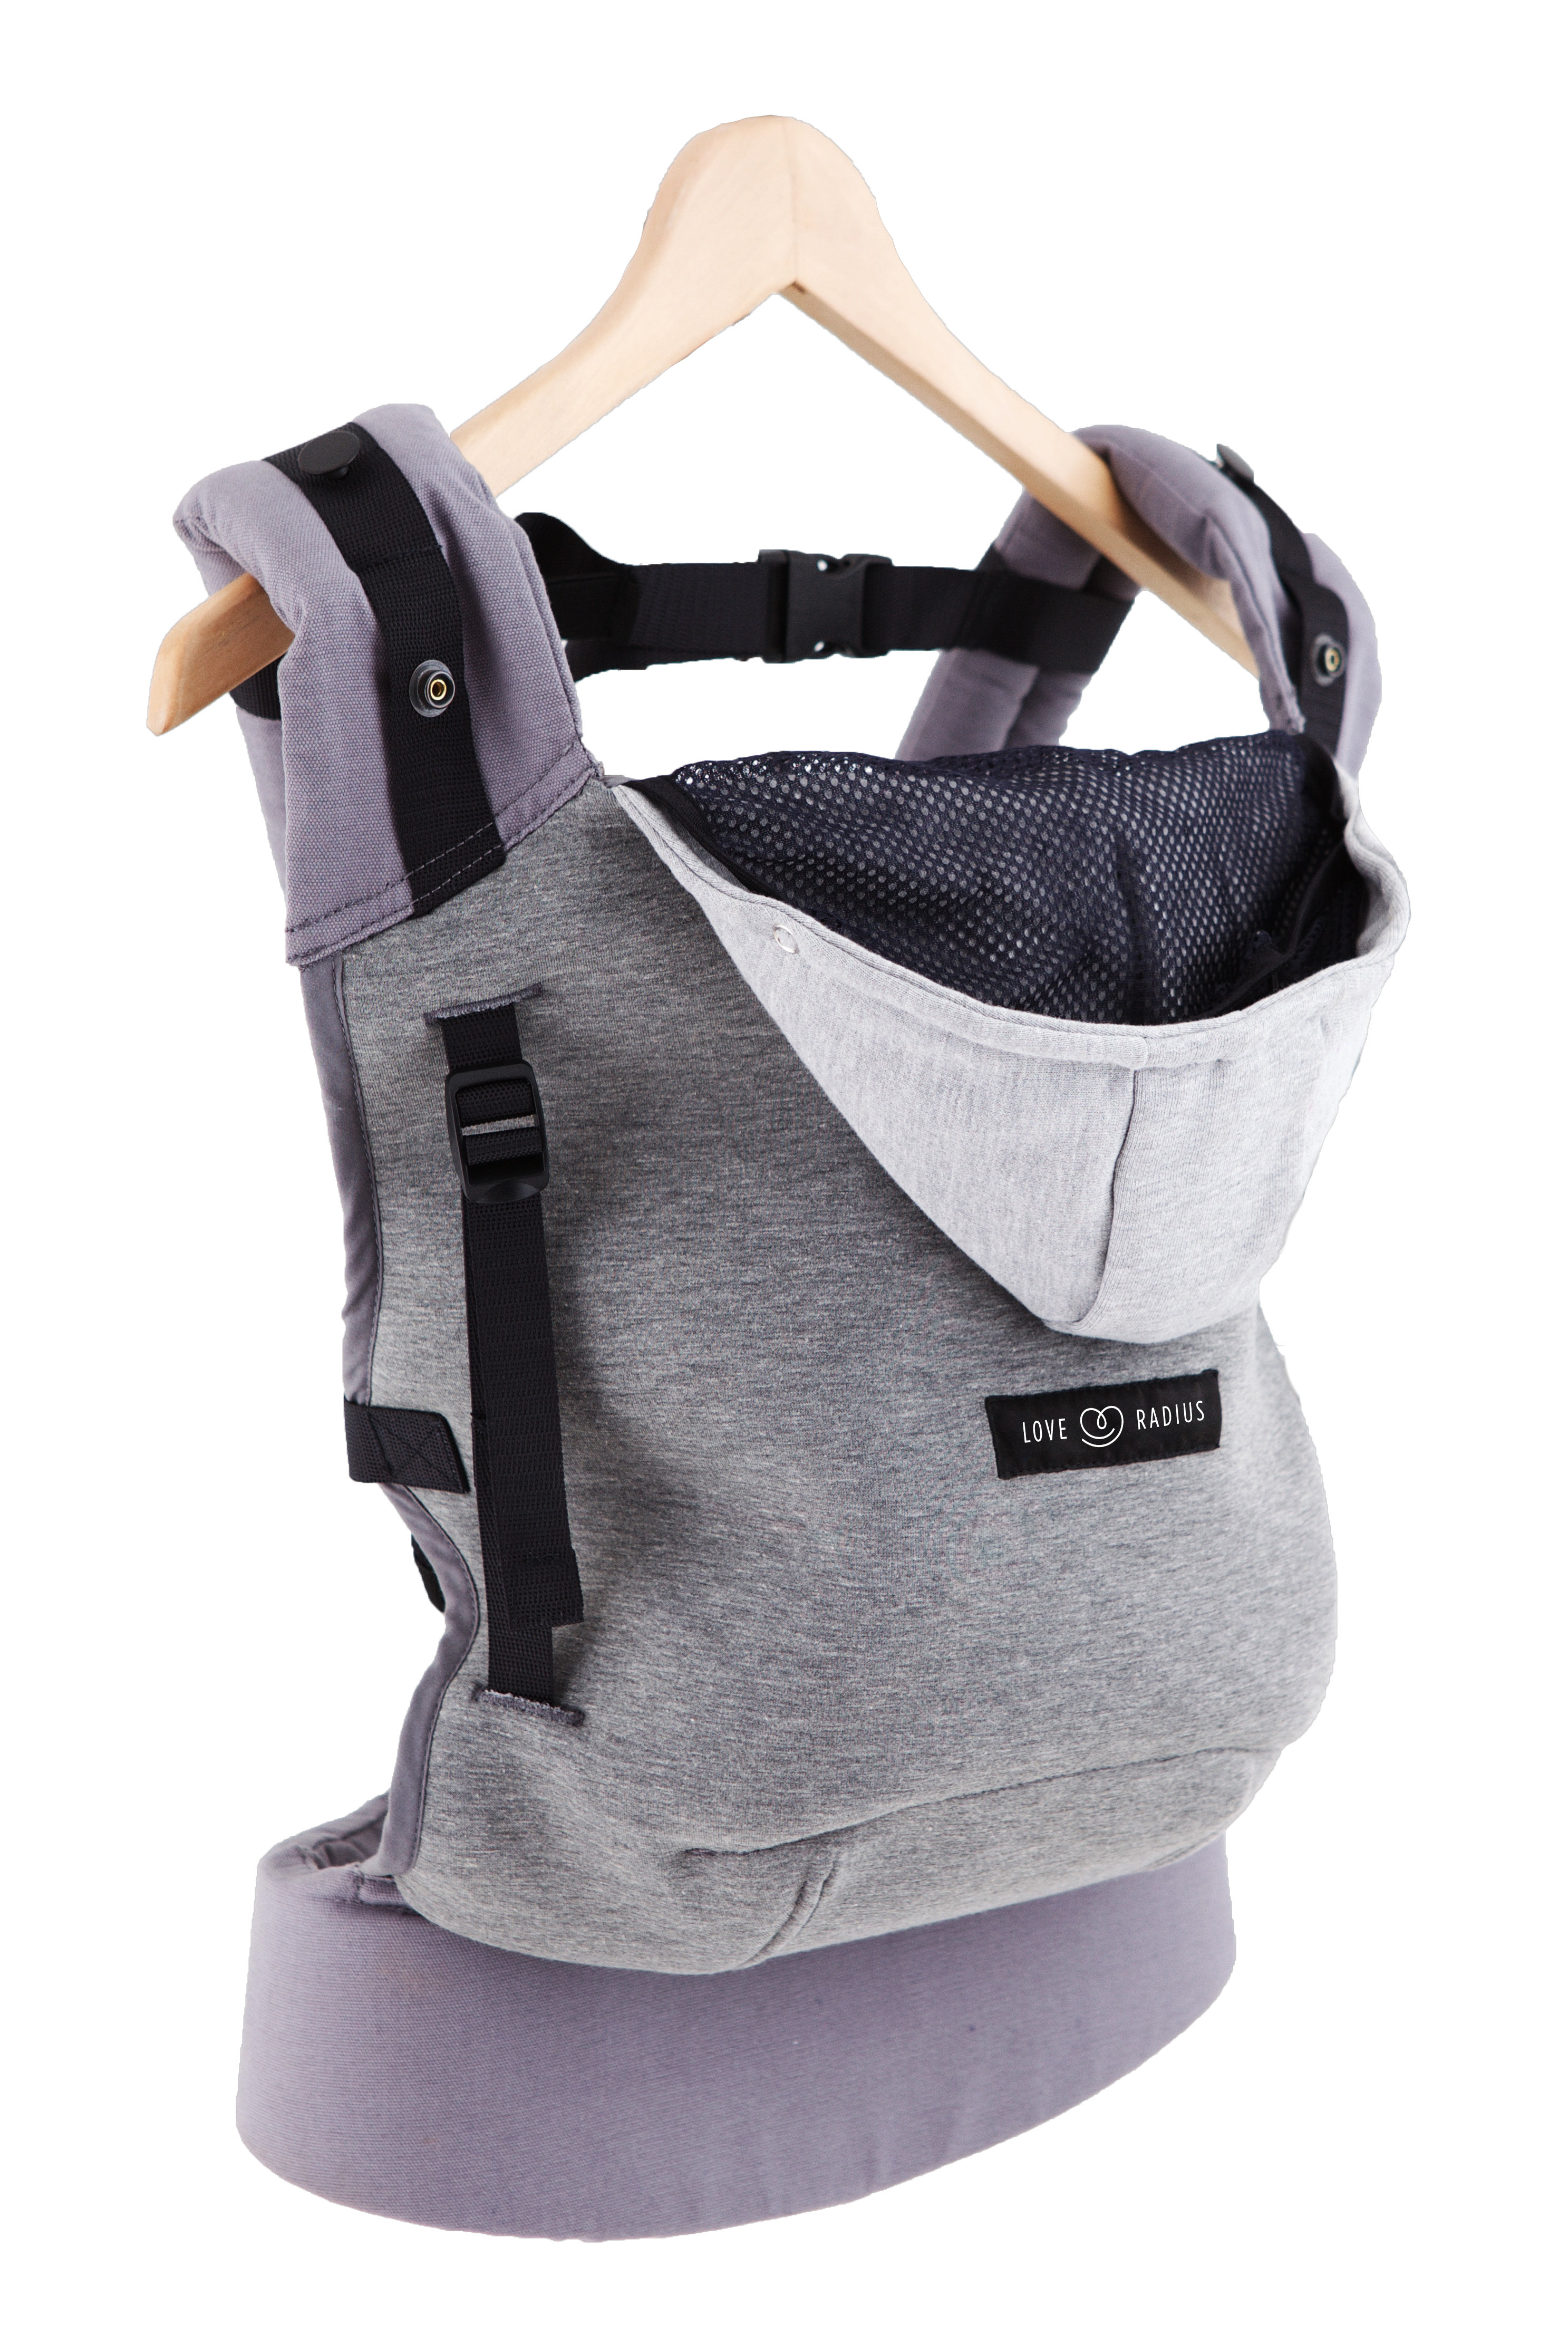 Echarpes de portage et porte-bébé Hoodie Carrier gris athlétique +